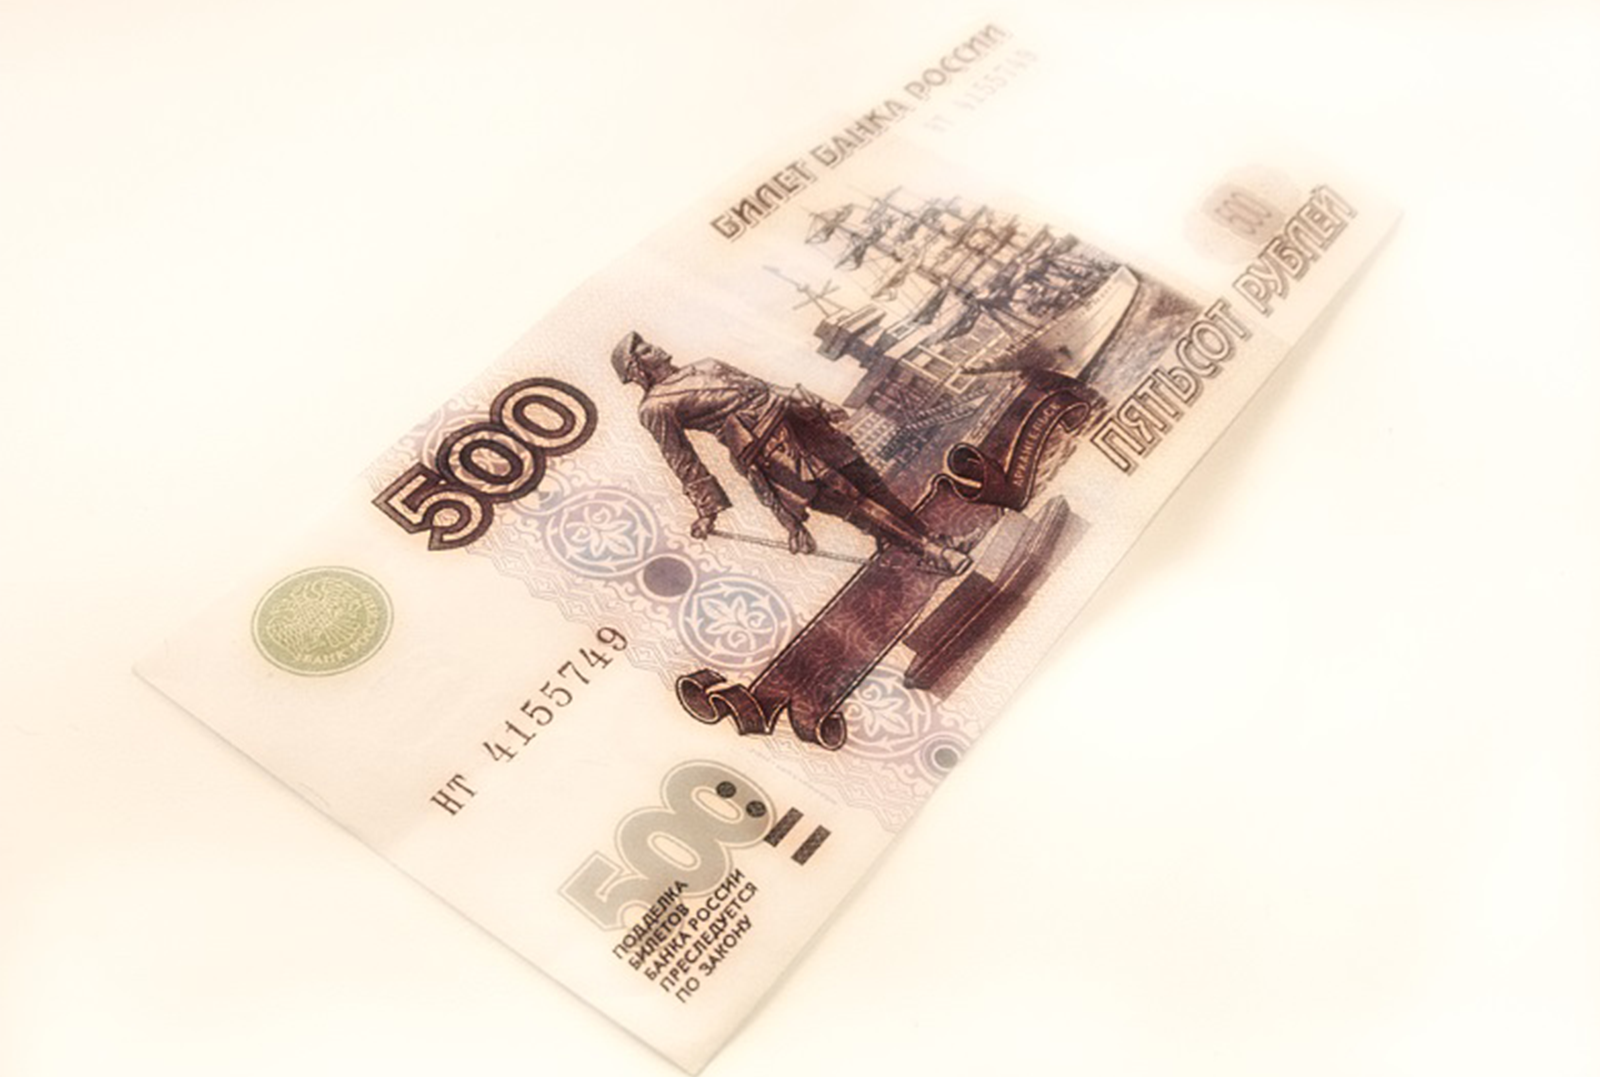 500 рублей в пакет